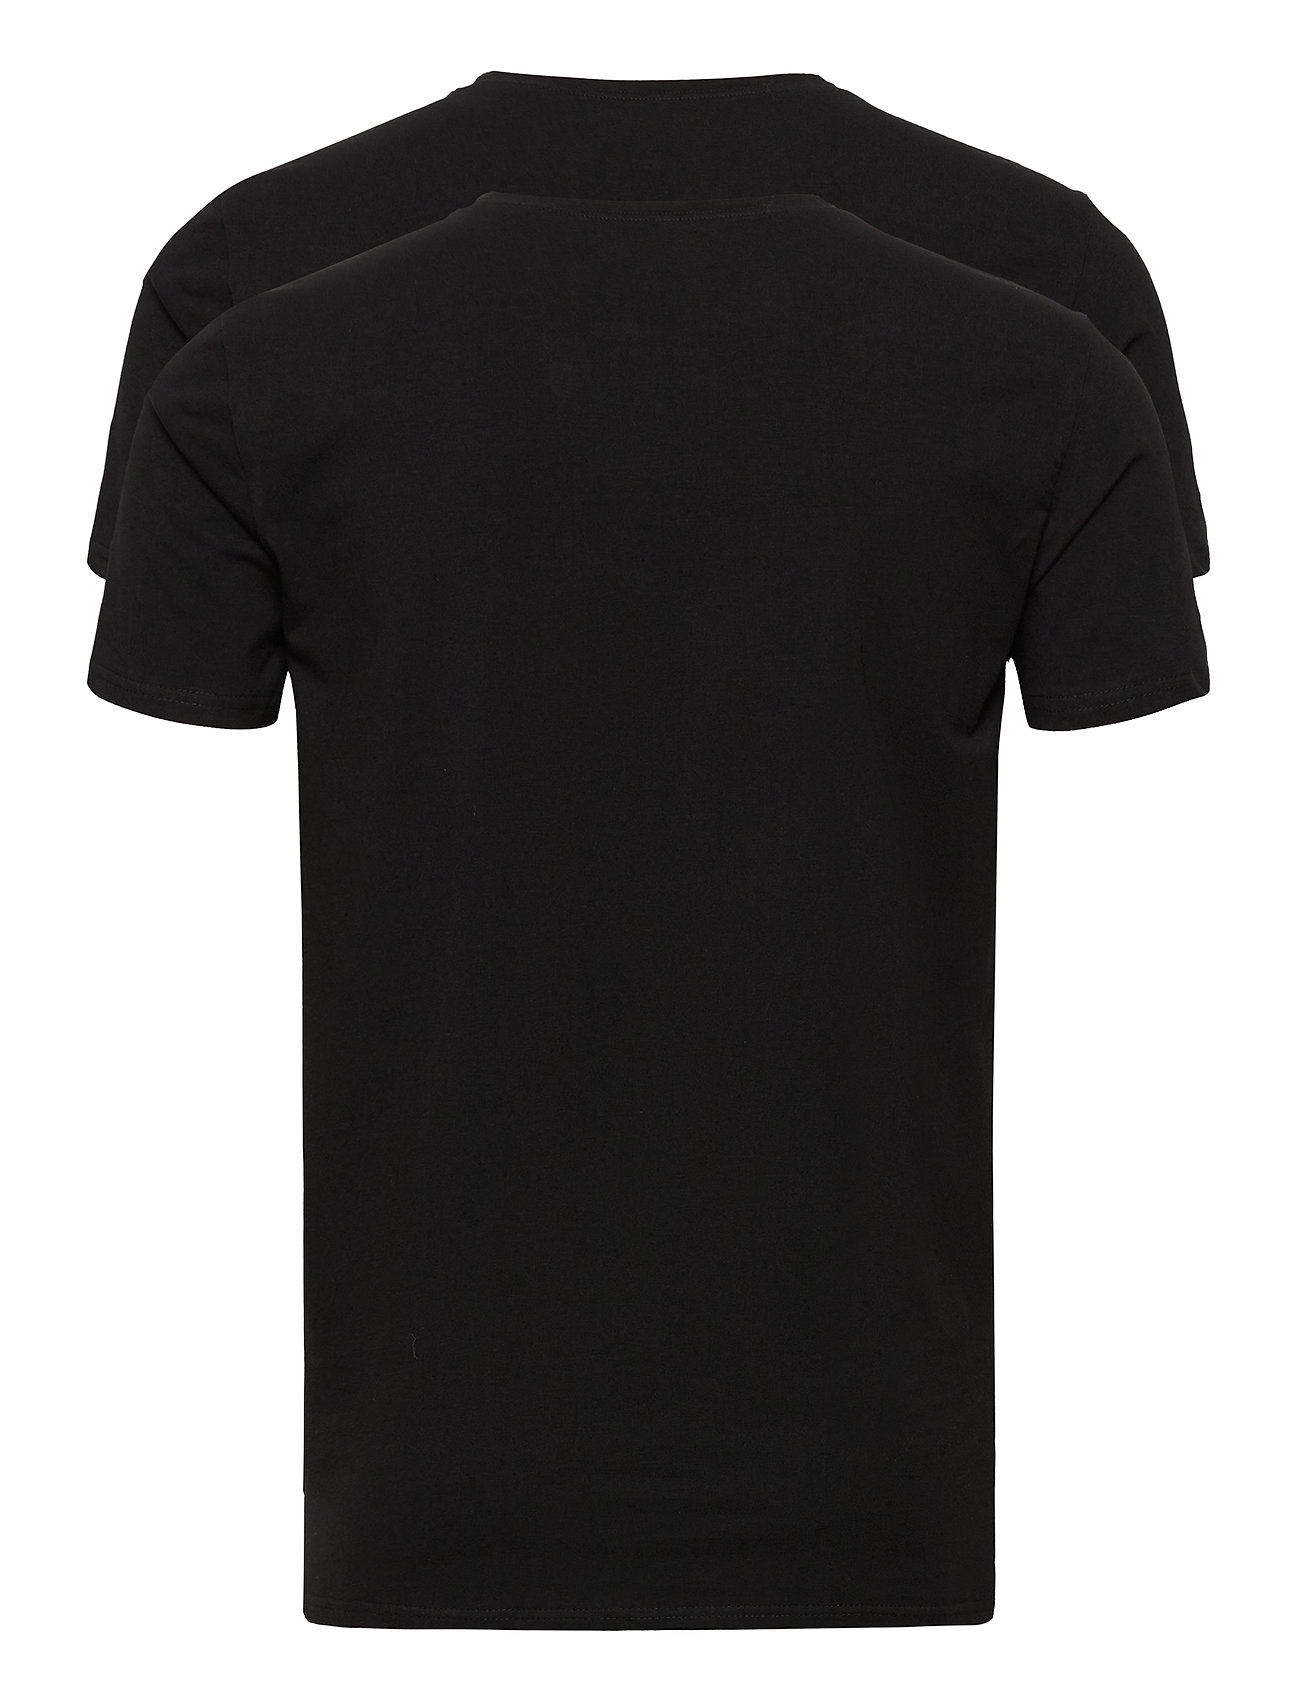 Les Deux - Les Deux Basic T-Shirt - 2-Pack - laveste priser - black - 1